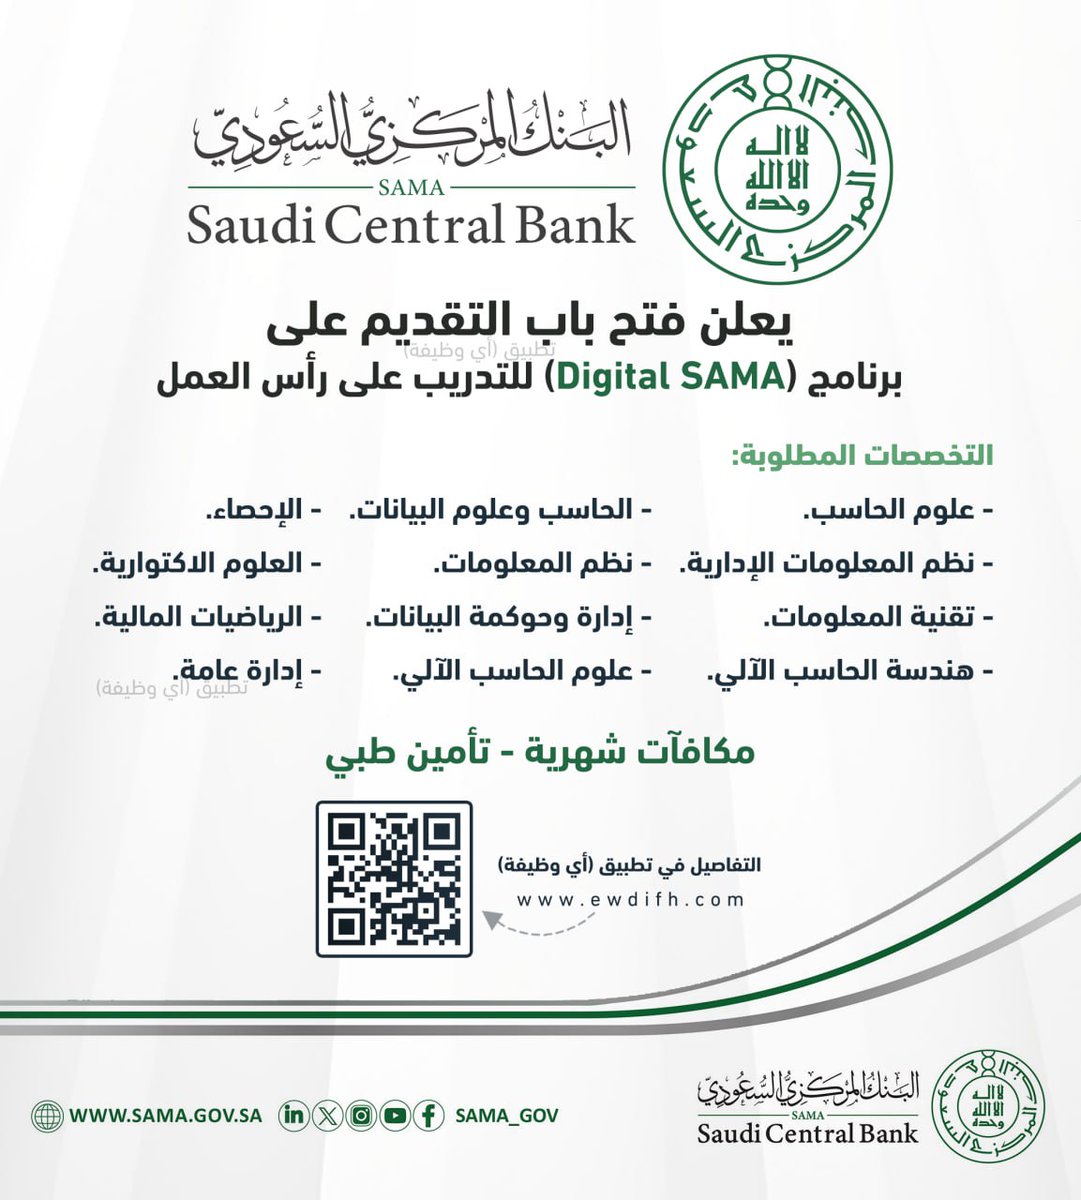 (🔴) البنك المركزي السعودي (ينتهي التسجيل غدًا الخميس):

⭐️ (تعزيز فرص التوظيف - مكافآت شهرية - تأمين طبي).

البنك المركزي السعودي يعلن استمرار التقديم في برنامج (Digital SAMA) للتدريب على رأس العمل.

تفاصيل: ewdifh.com/jobs/78284